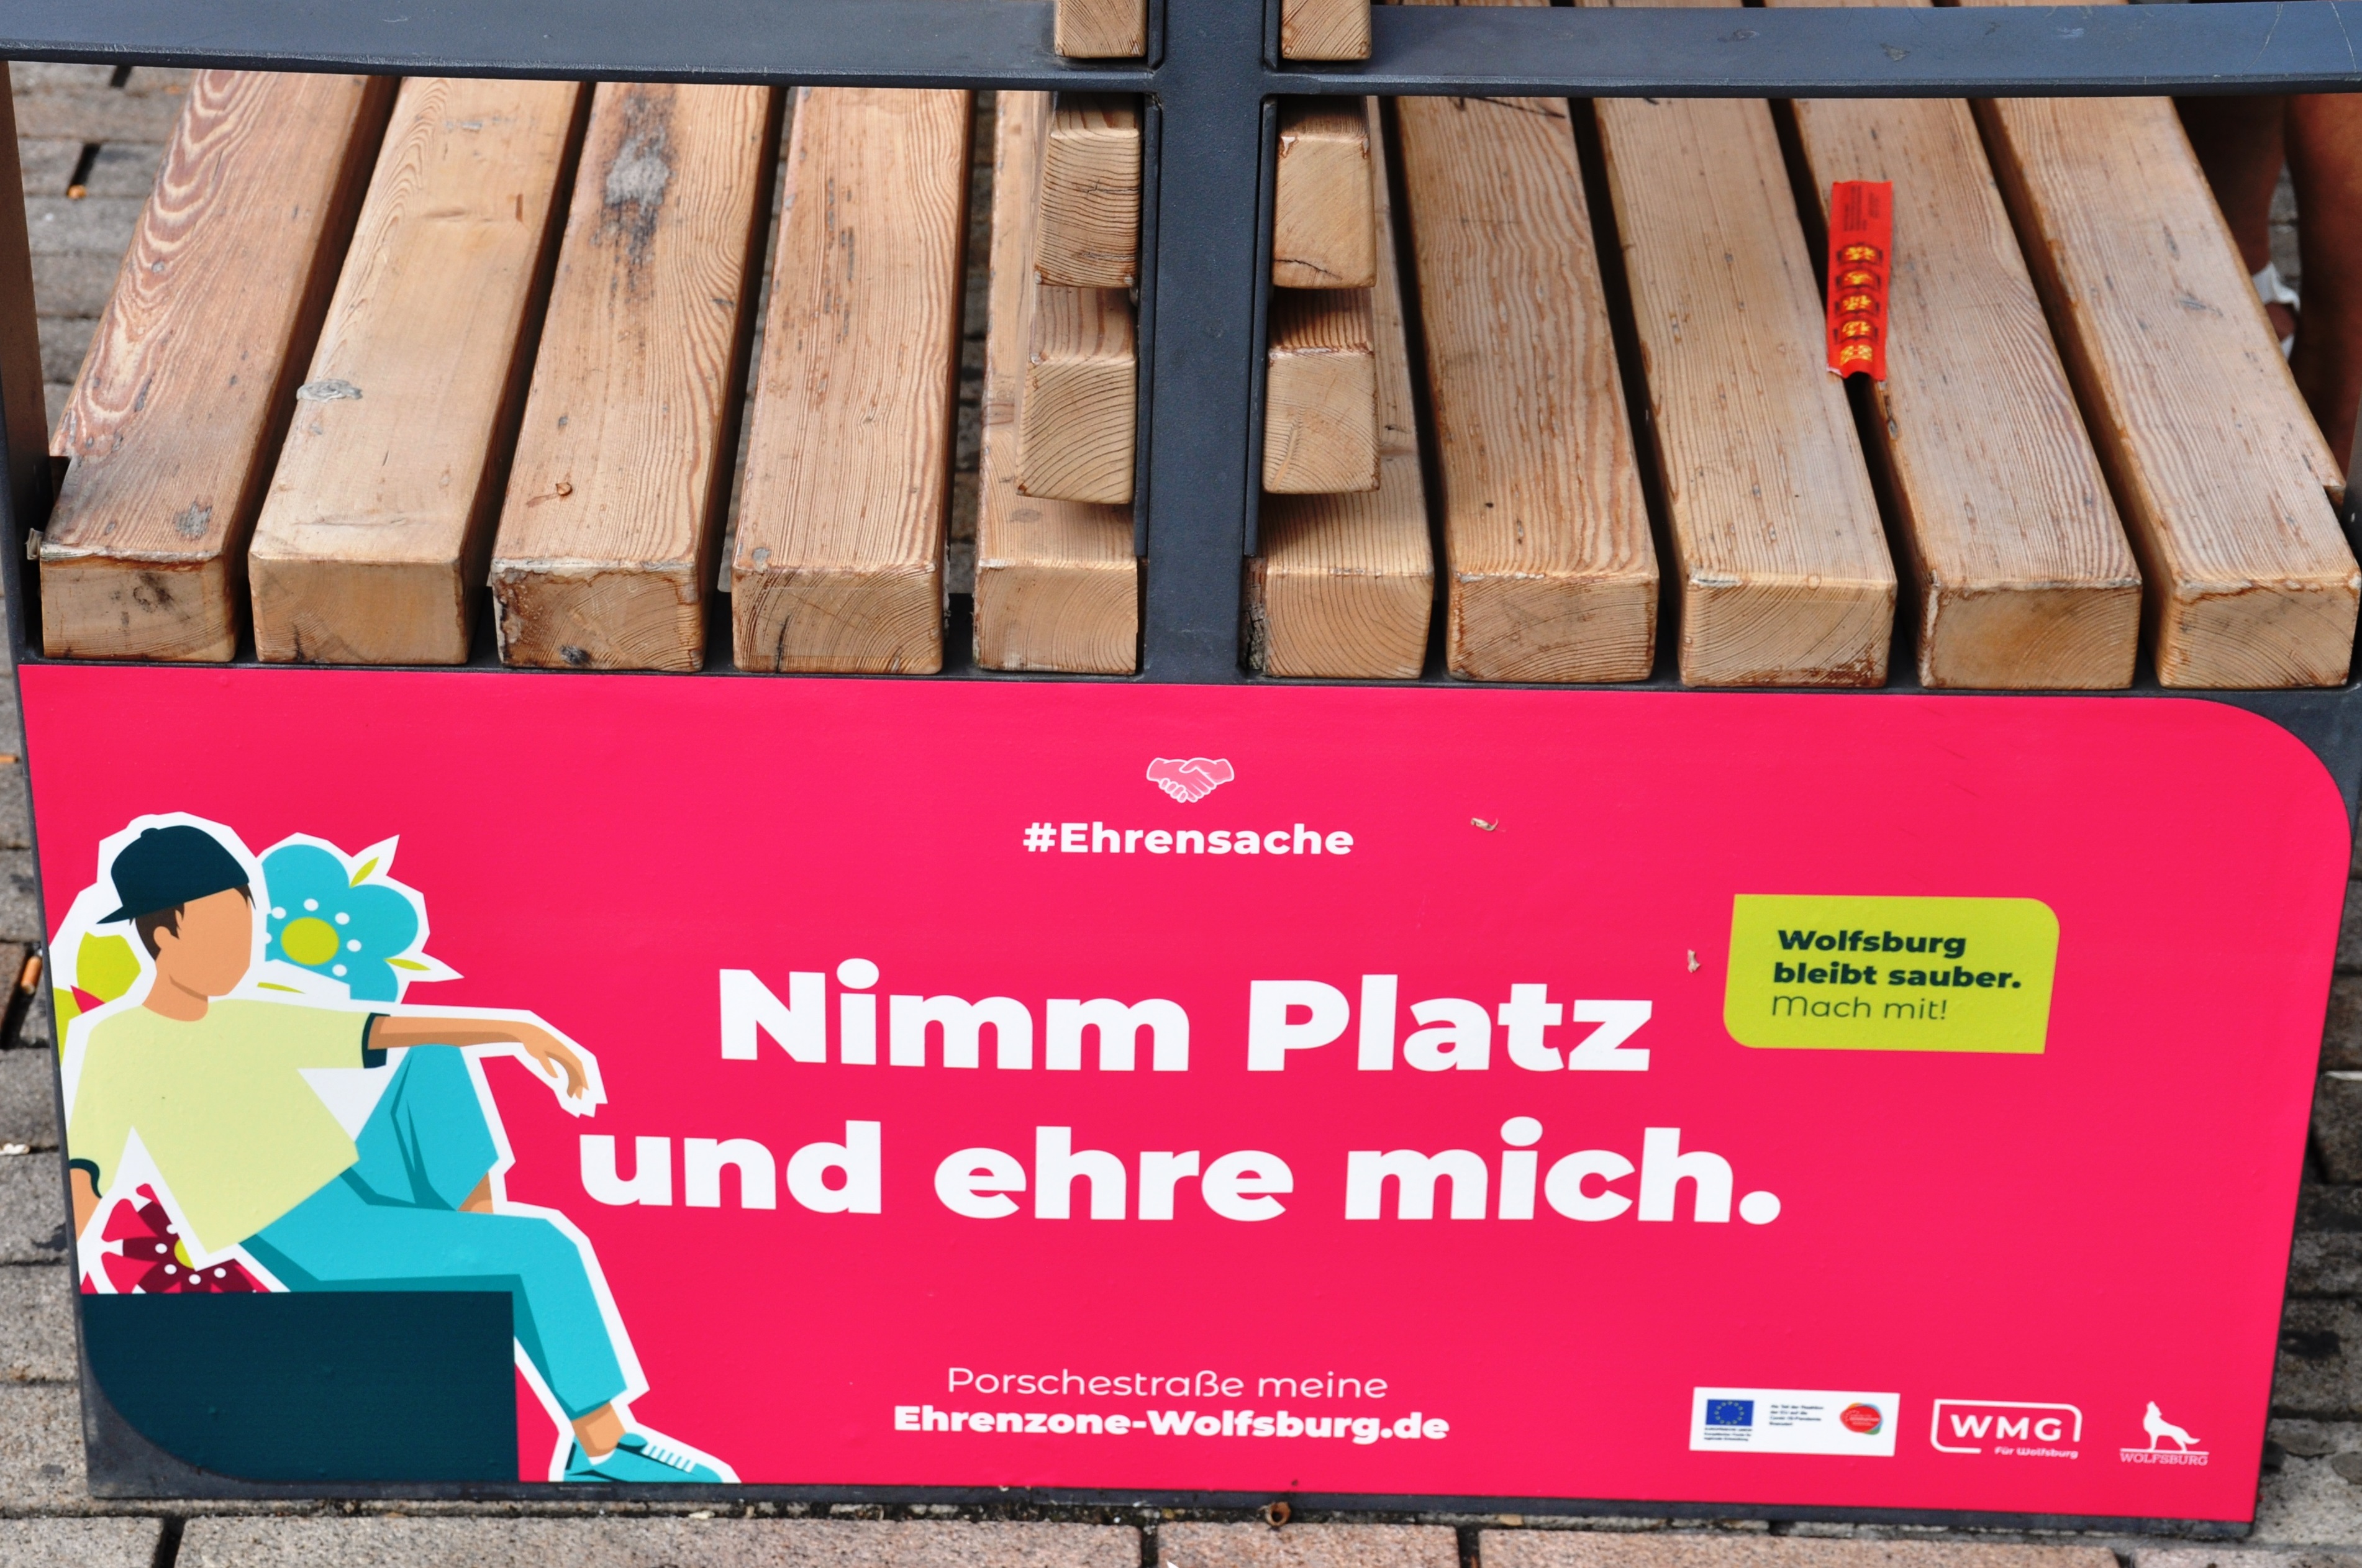 Kampagne zur Sauberkeit und Sicherheit in der Innenstadt "Ehrensache" - Aufkleber "Nimm Platz und ehre mich"